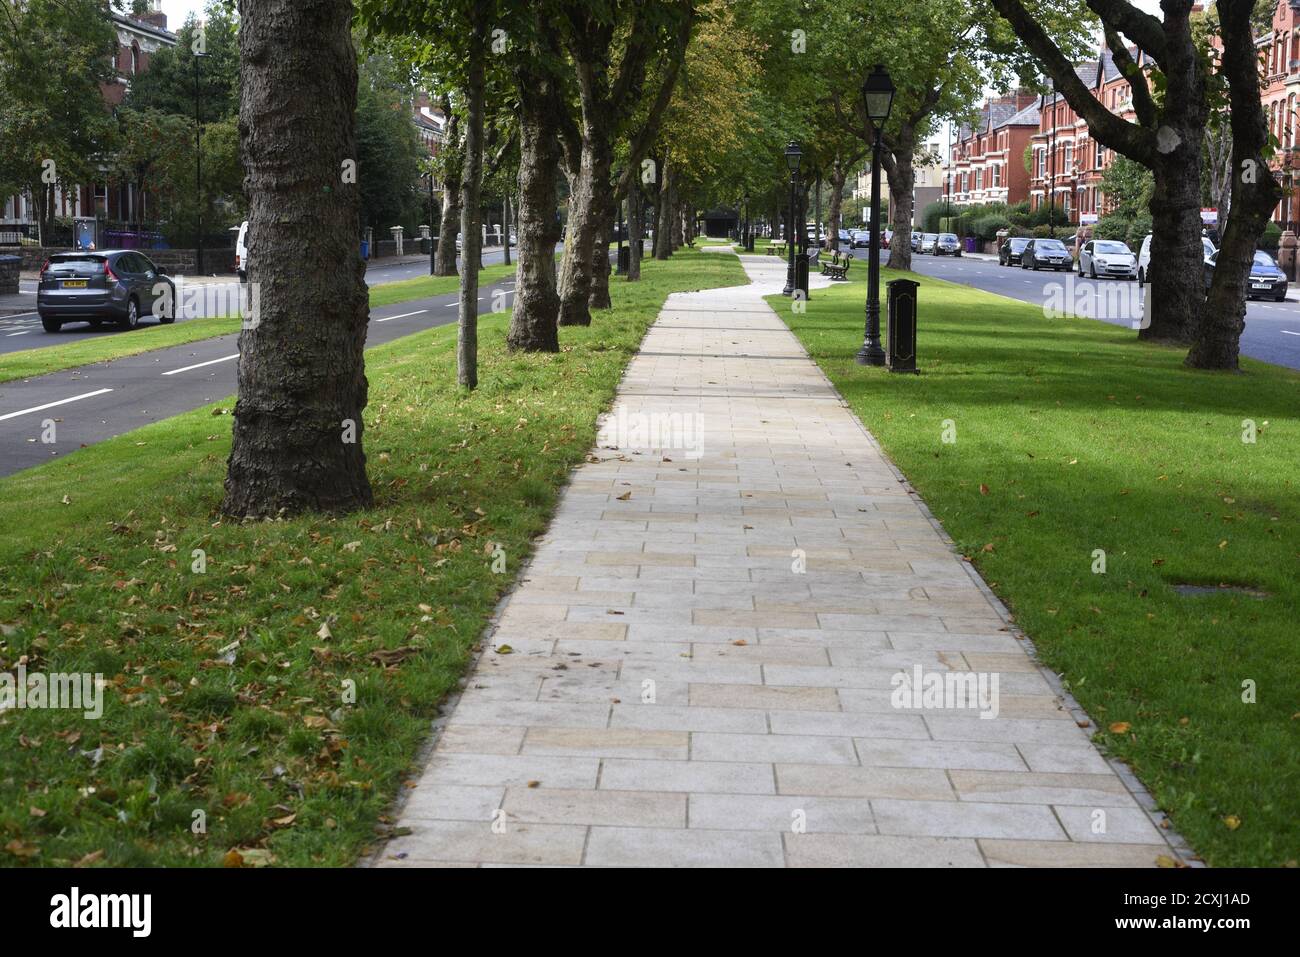 Princes Avenue / Boulevard SCHRITT Scheme 1km Weg im Jahr 2020 abgeschlossen. Dieses 4-£-Programm ist Teil der Region Liverpool City’s Sustainable Transport Enhancemen Stockfoto